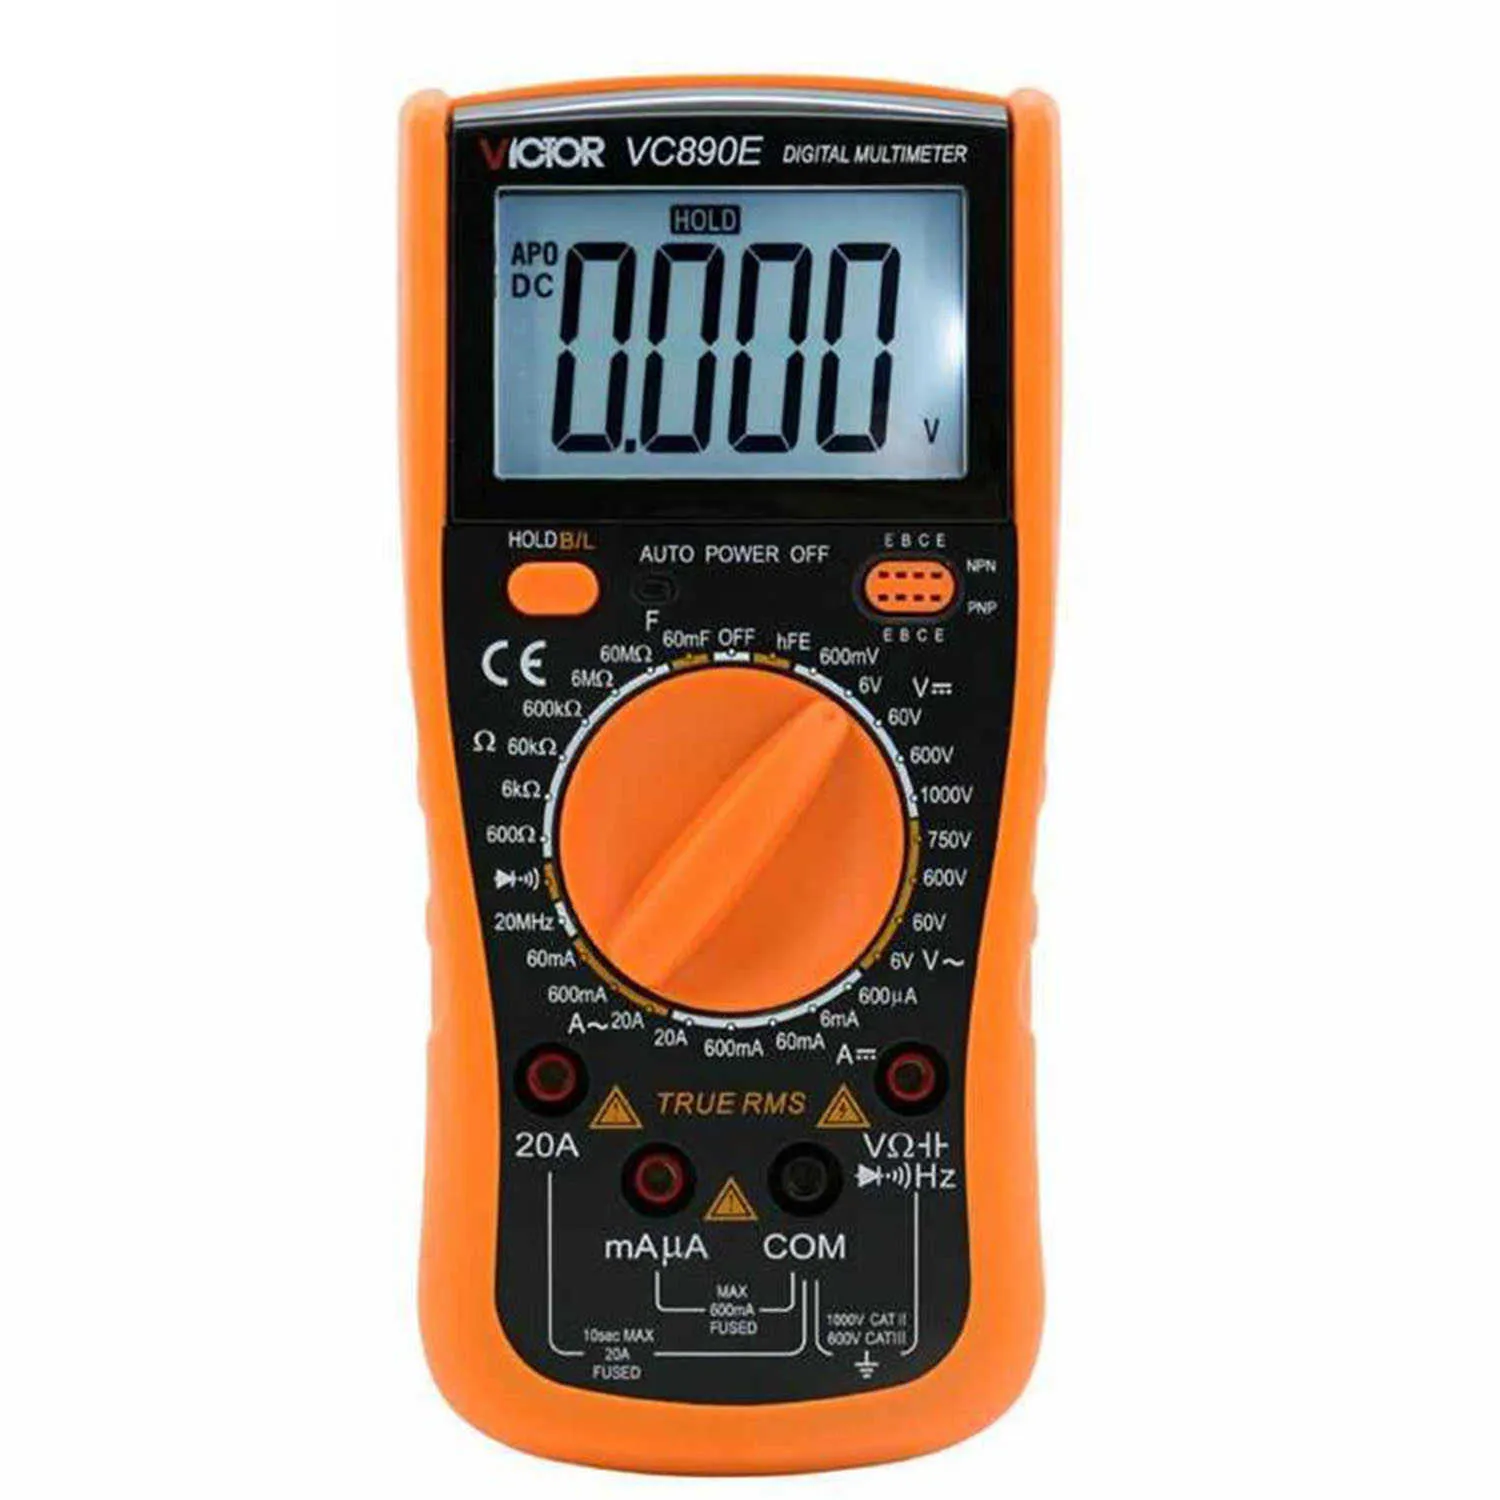 Avez-vous un voltmètre multifonctions à me conseiller pour mesurer